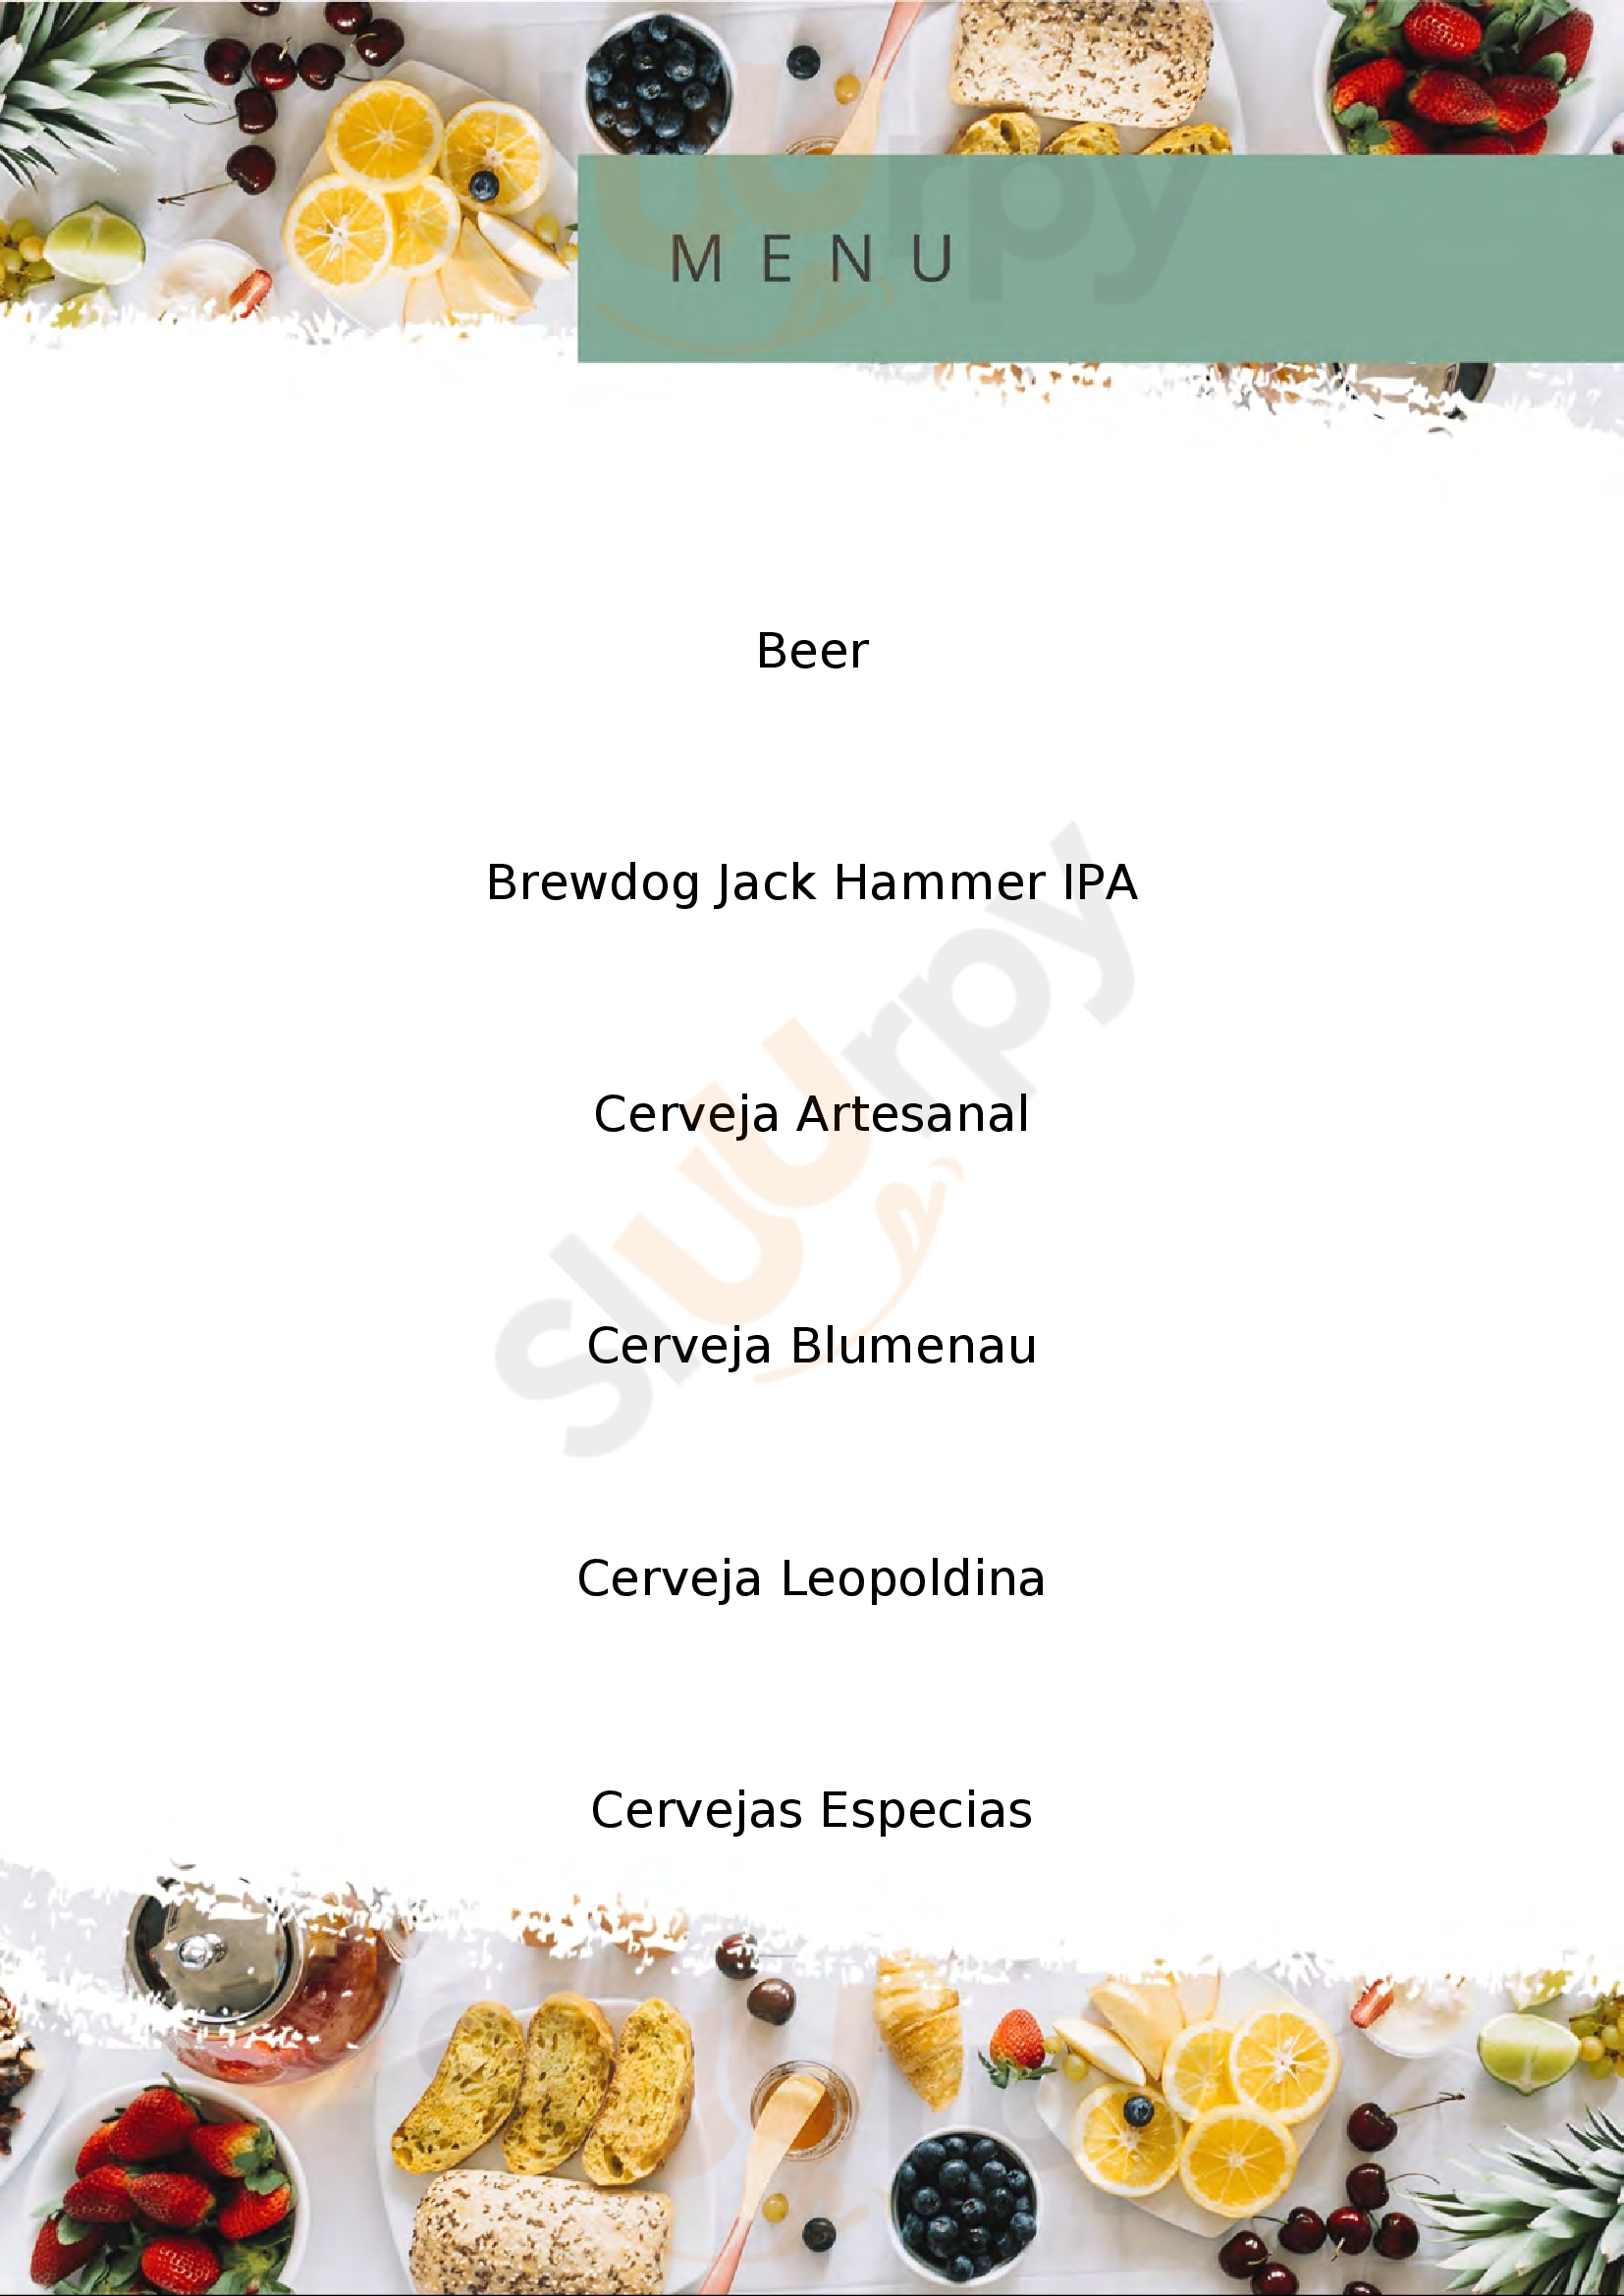 Beermade Cervejas Artesanais Florianópolis Menu - 1